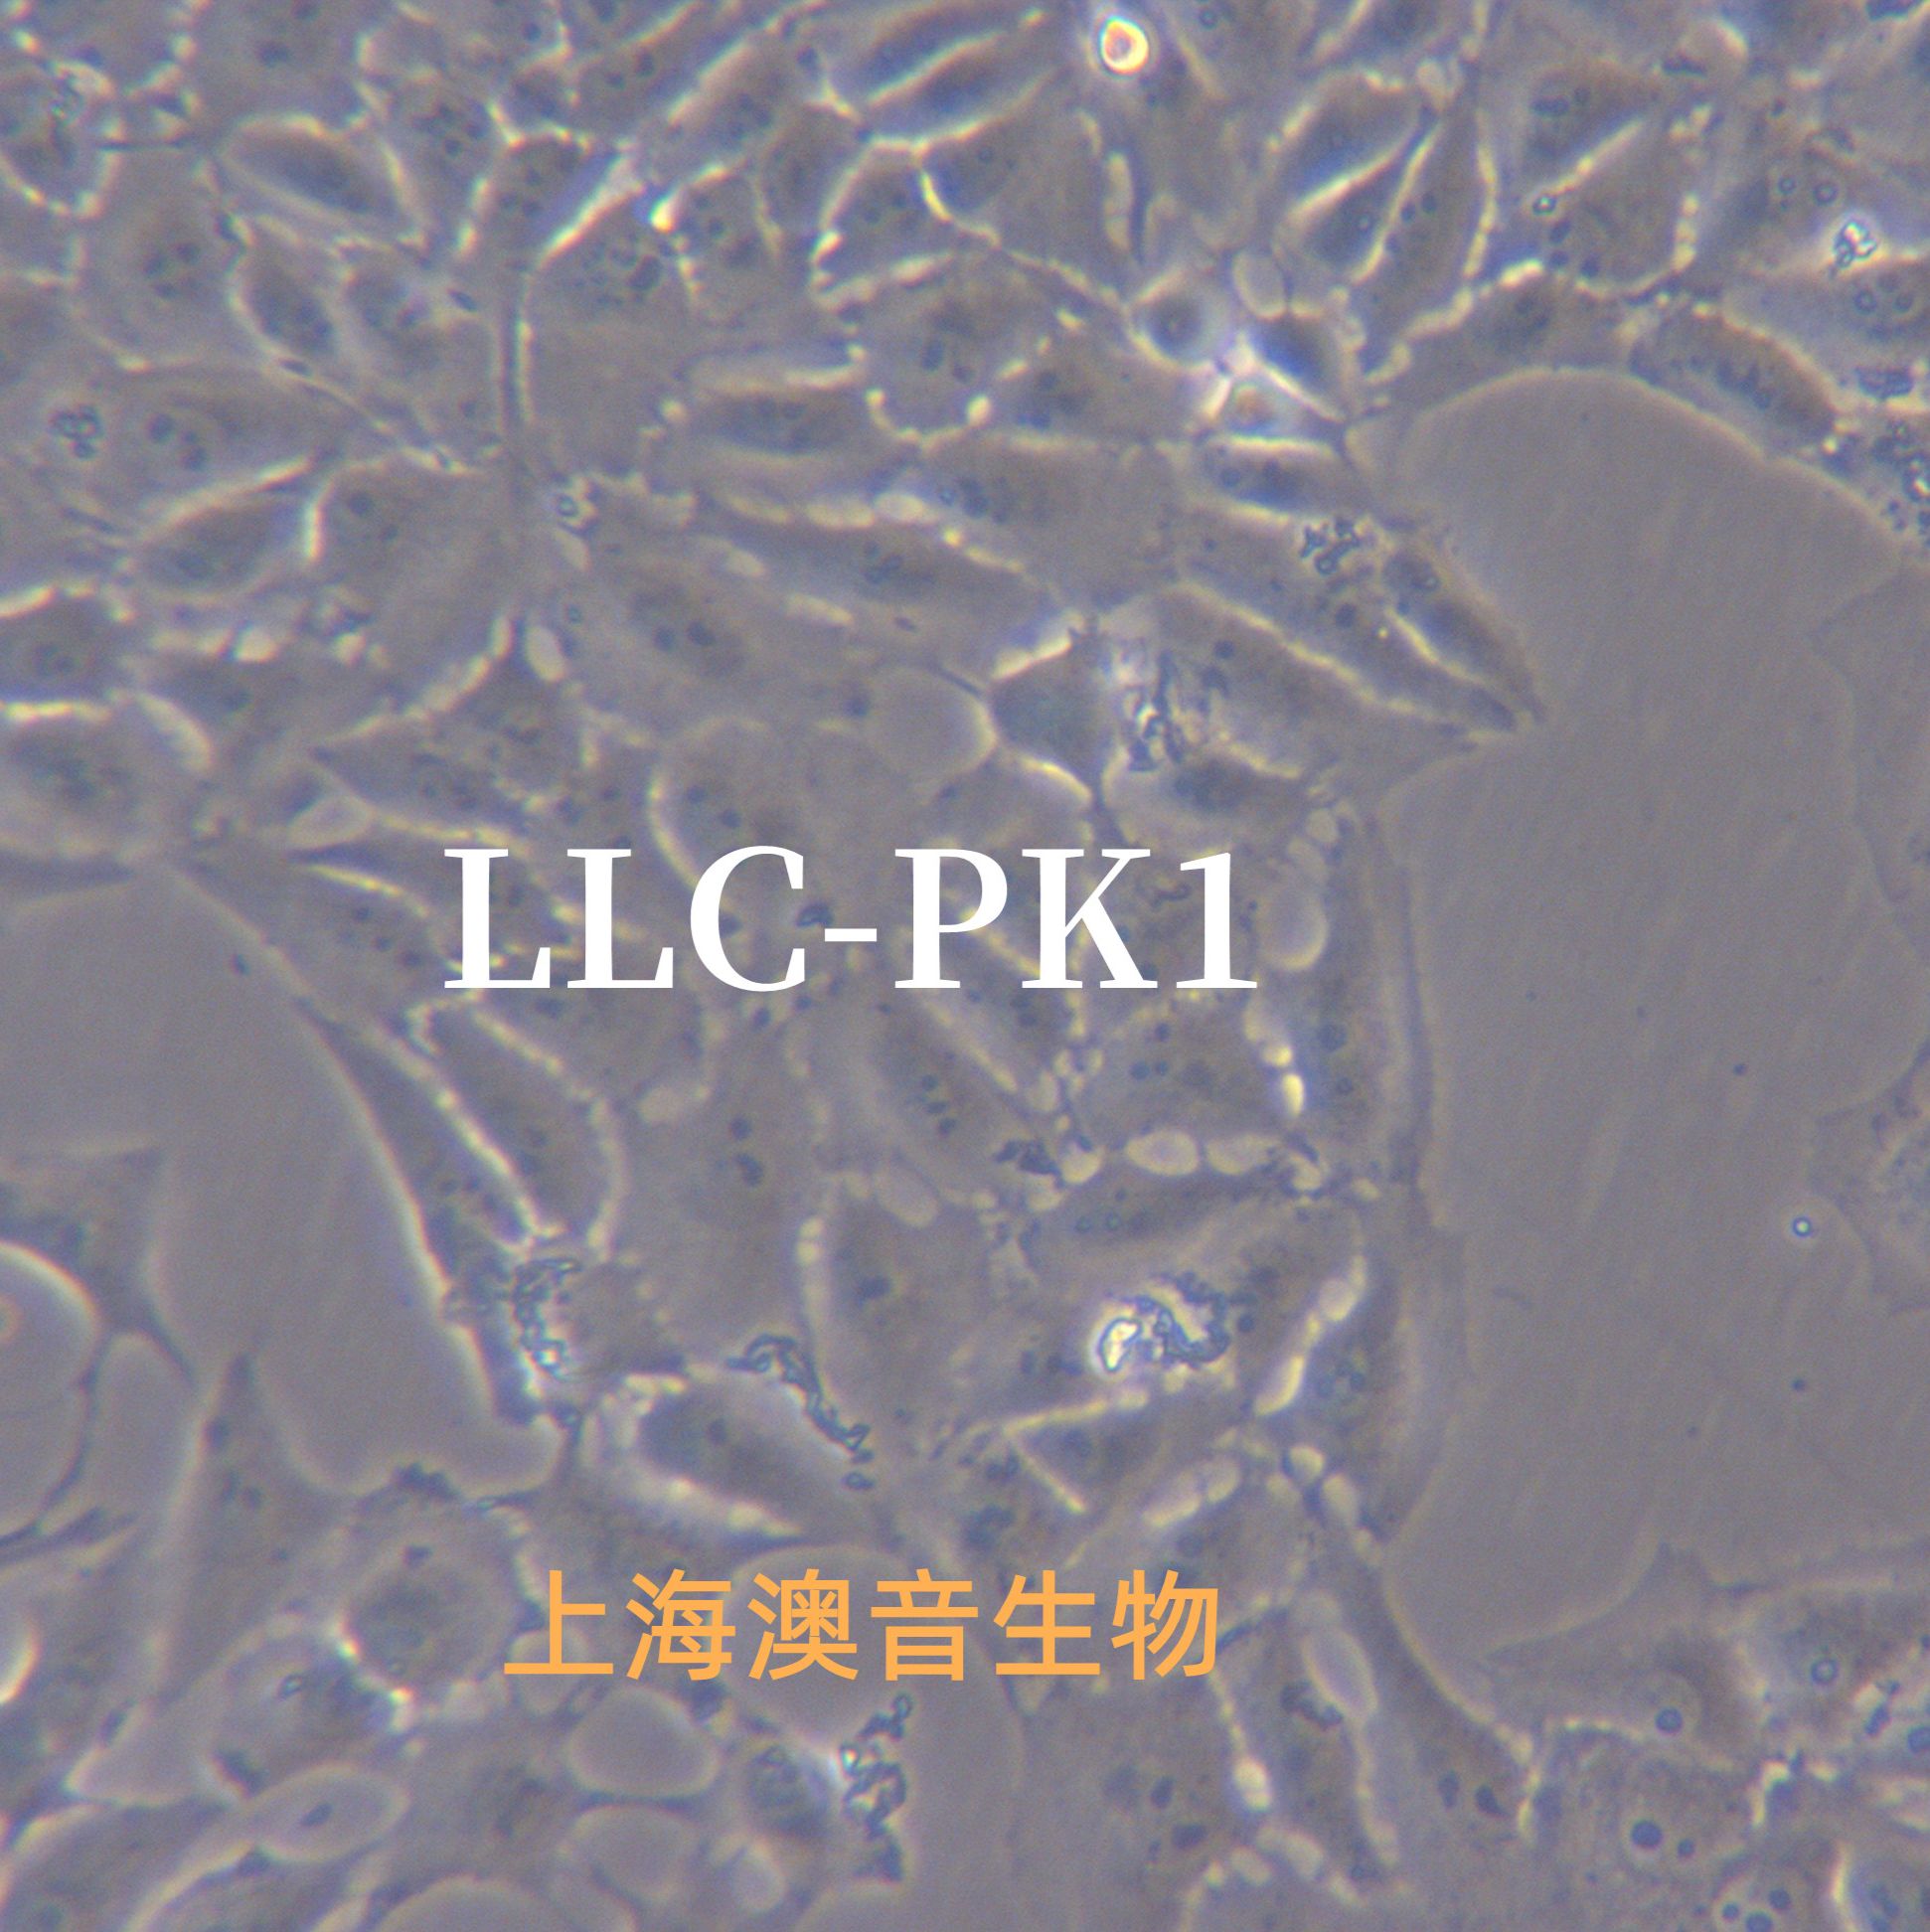 LLC-PK1[LLC-PK(1); LLC-PK-1; LLC PK-1; LLc-PK1; LLC PK1; LLCPK1]猪肾上皮细胞